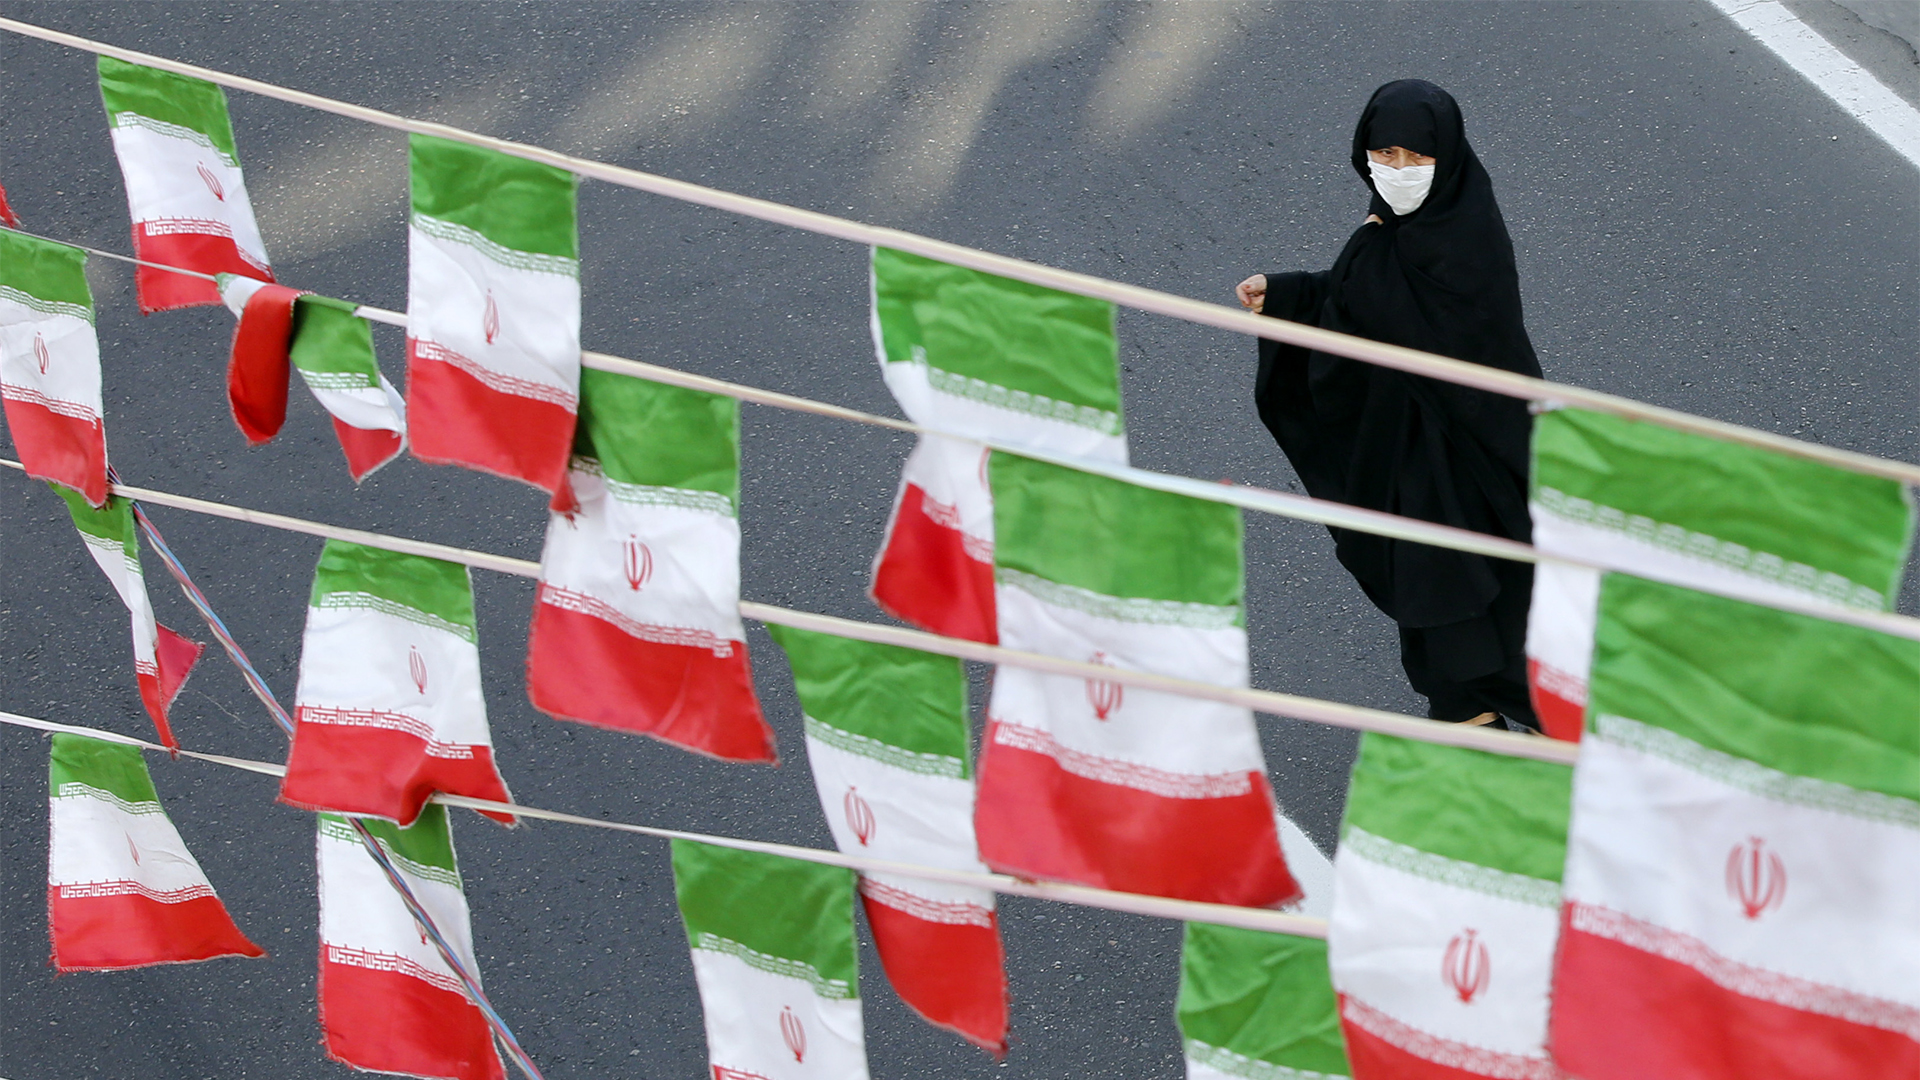 Hatszázan indulnának az iráni elnökválasztáson, de sokukat valószínűleg nem fogják engedni